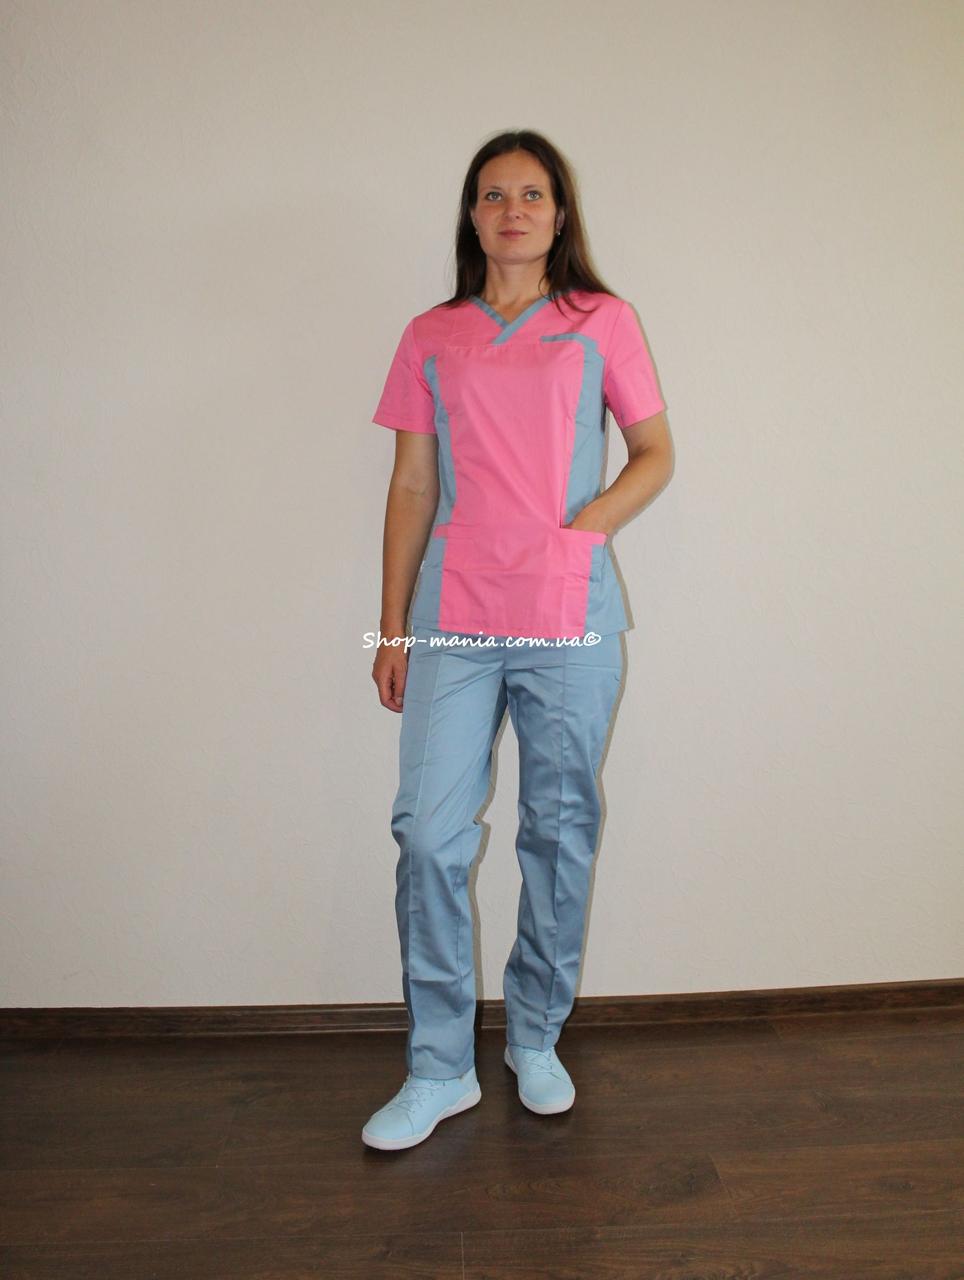 Хірургічний медичний жіночий костюм SM 1400-9 коттон Lilija 42-56 р (корал-сірий)